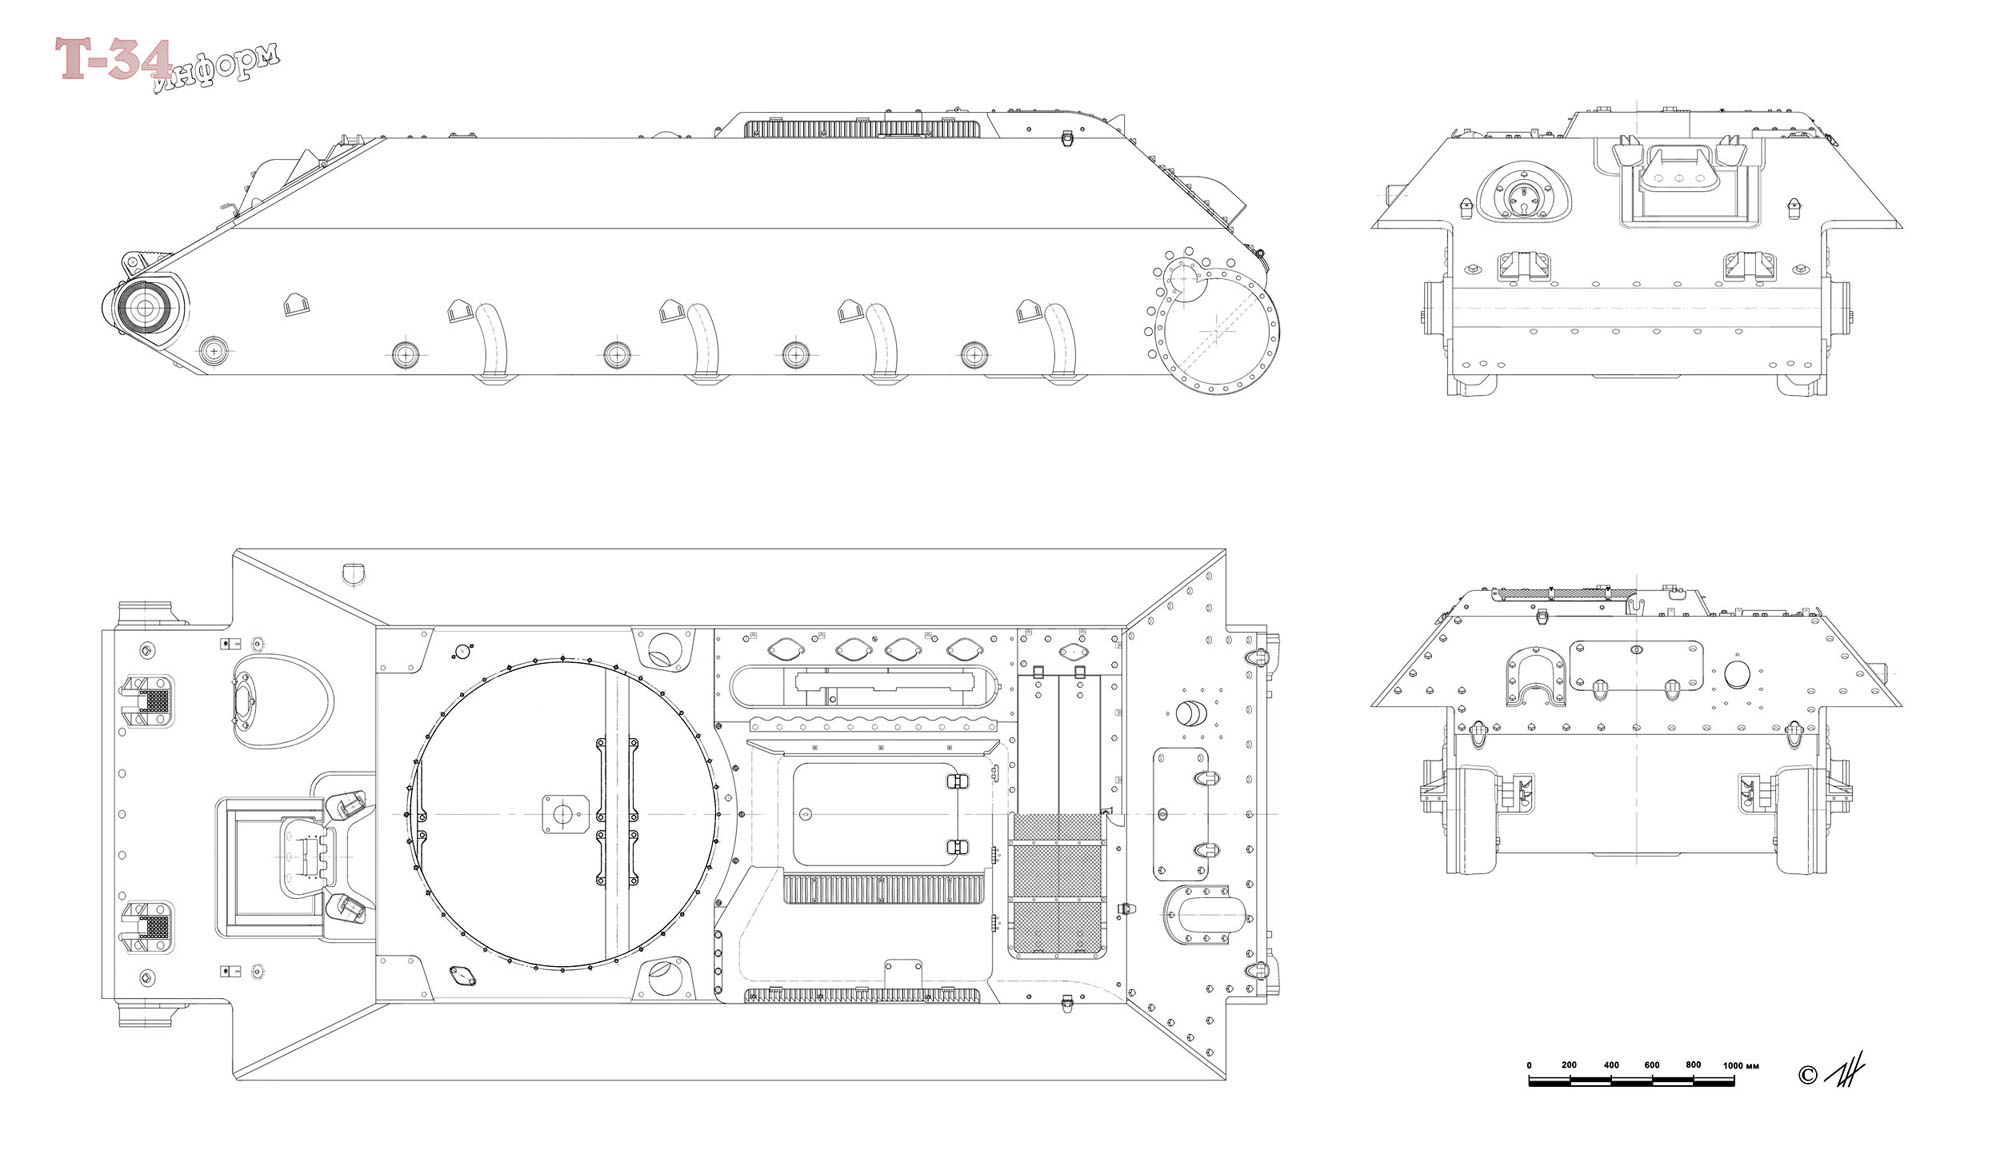 Схема танка т34 корпус